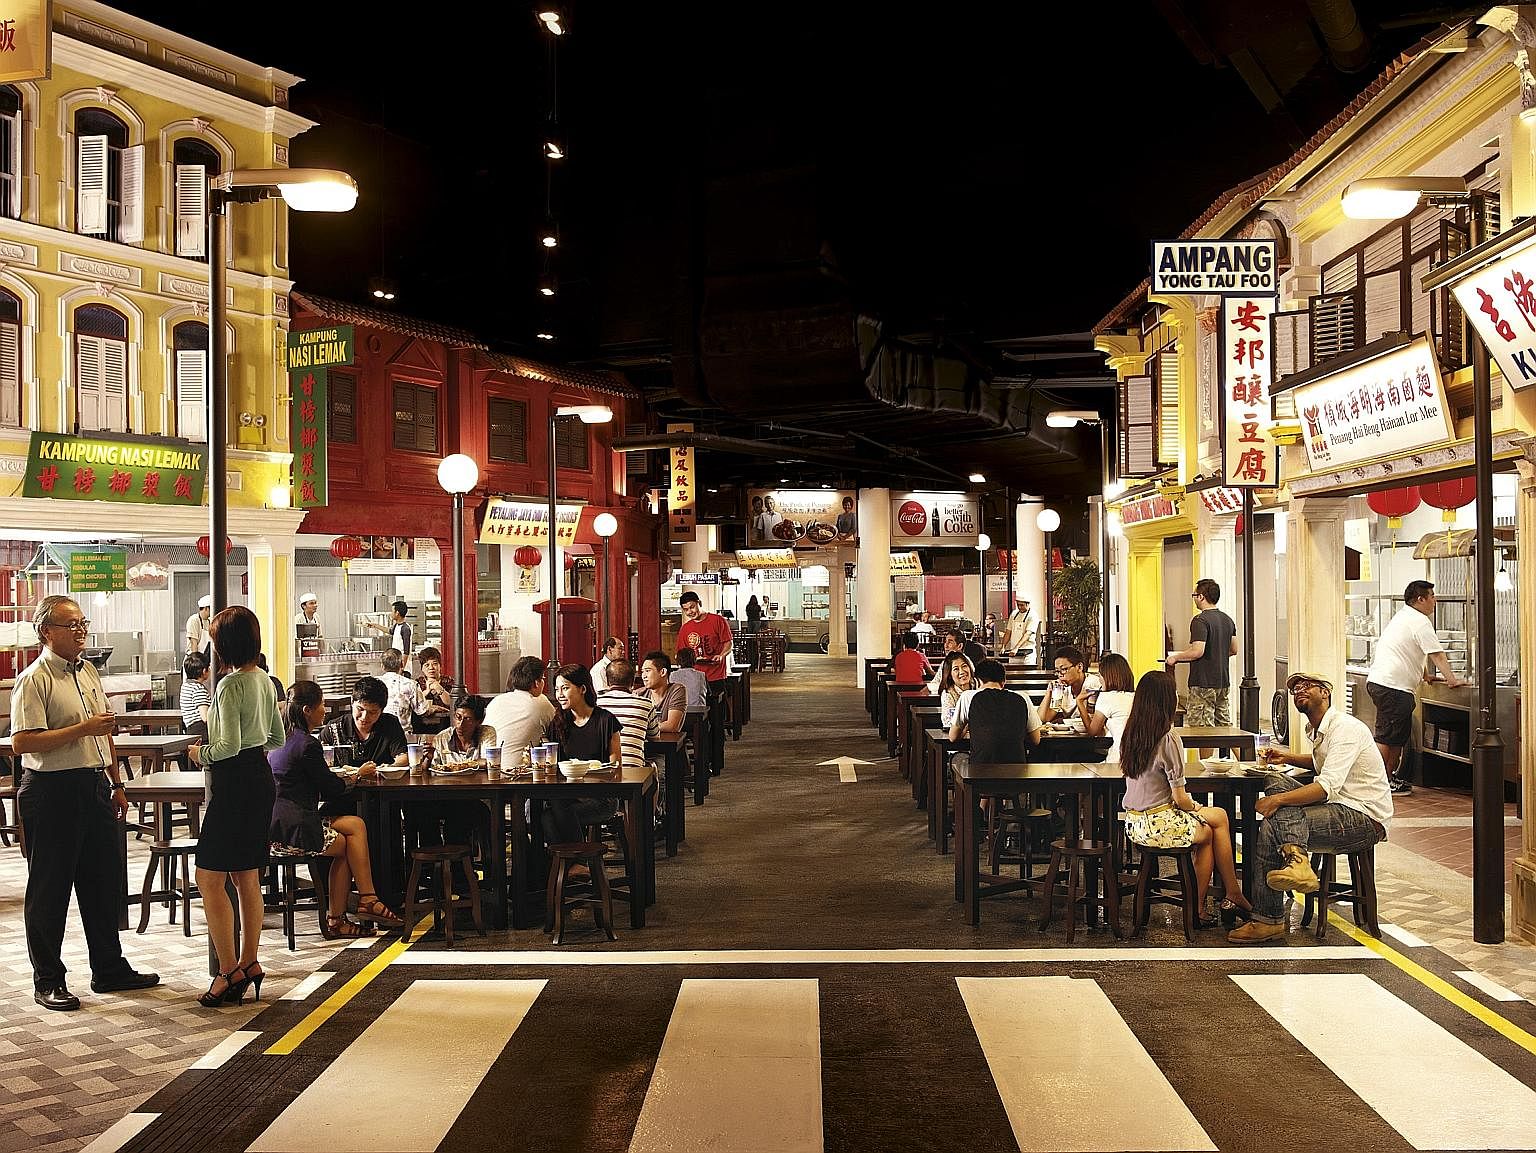 Malaysian Food Street at Resorts World Sentosa.